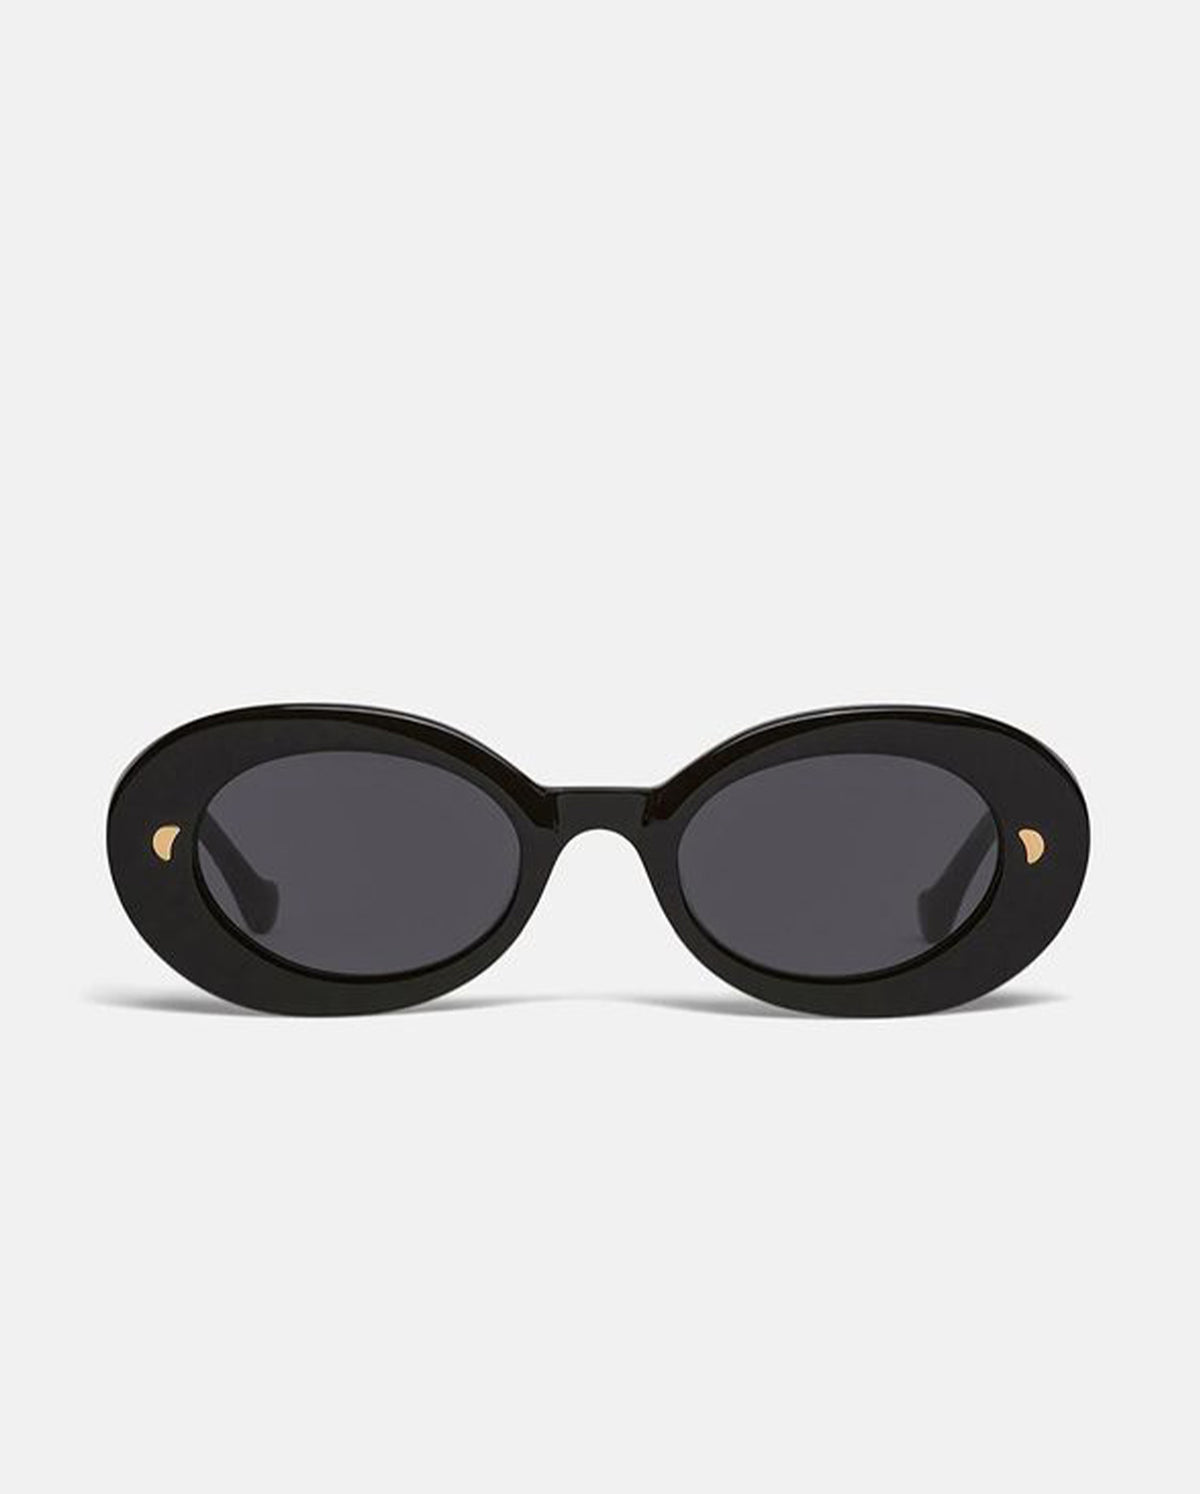 Giva Bio Plastic Oval Sunglasses